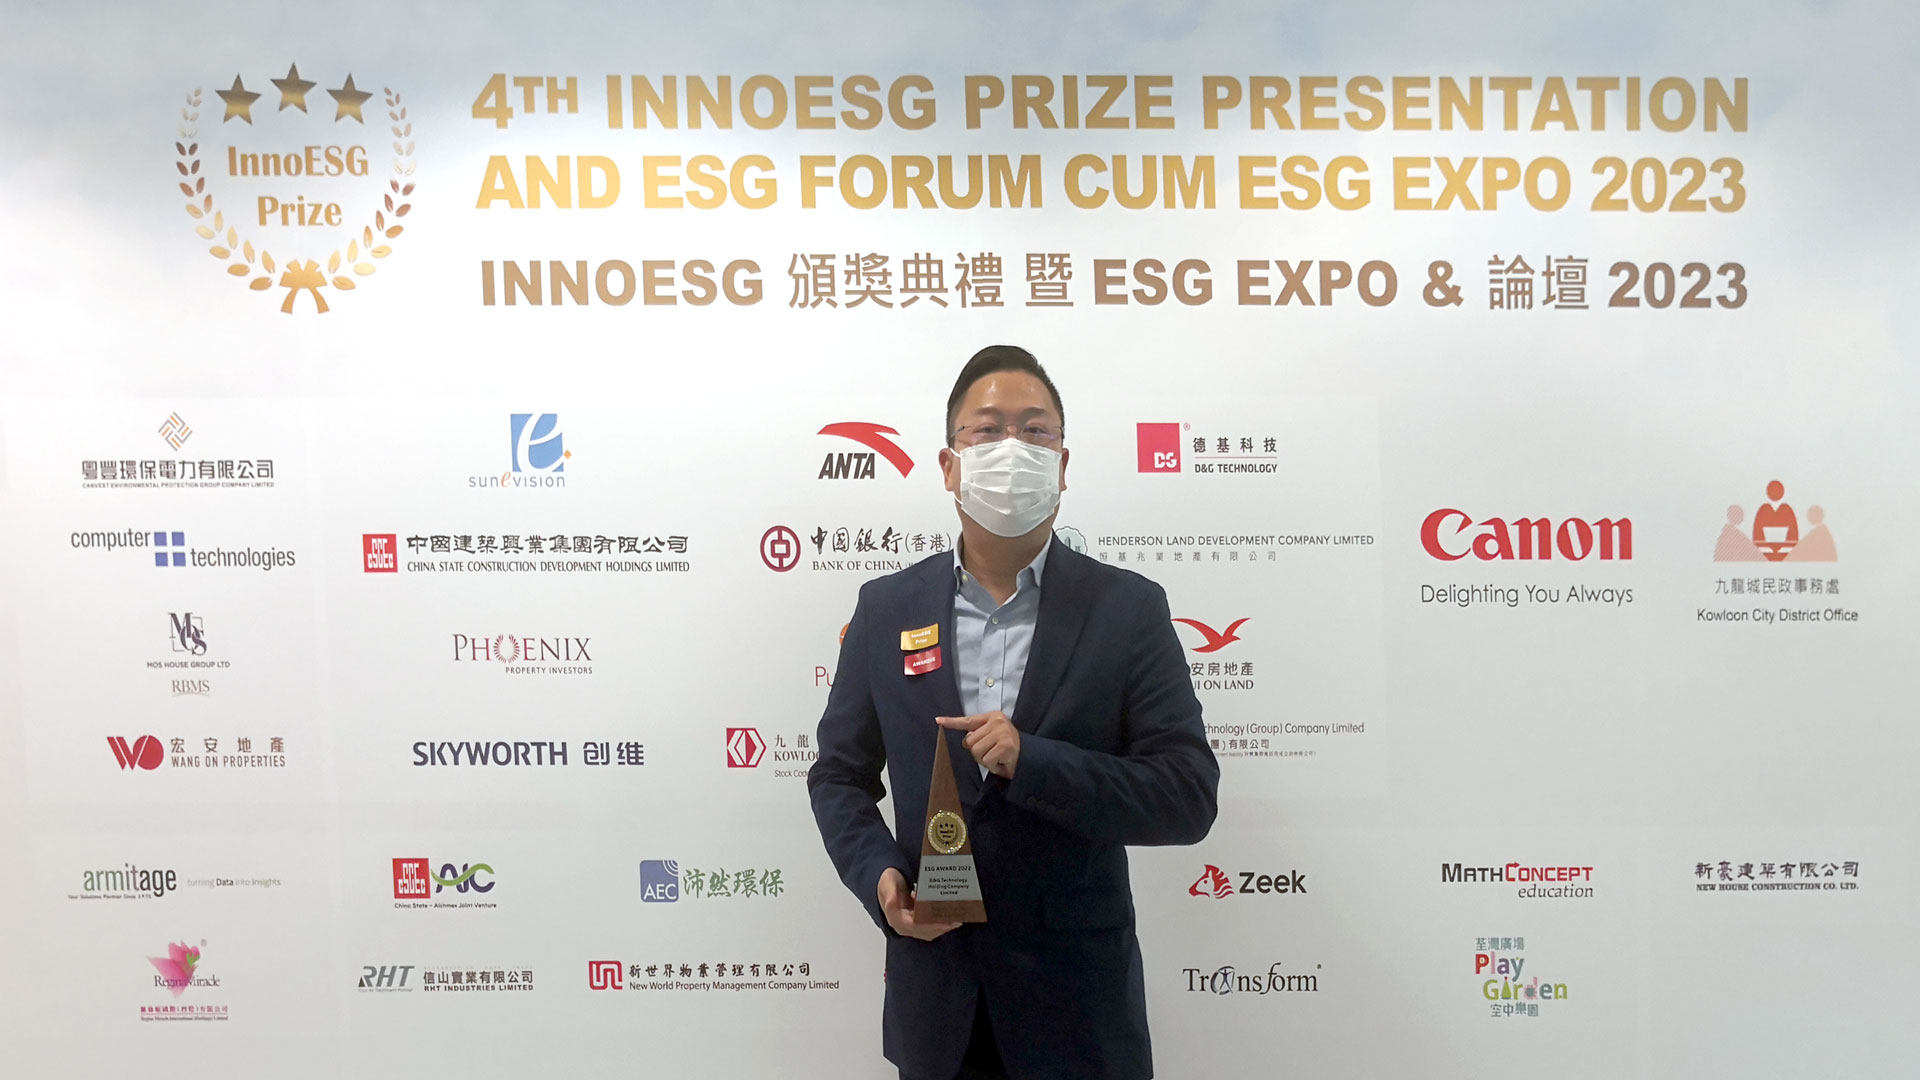 德基科技获颁 InnoESG  Prize 2022: ESG Award